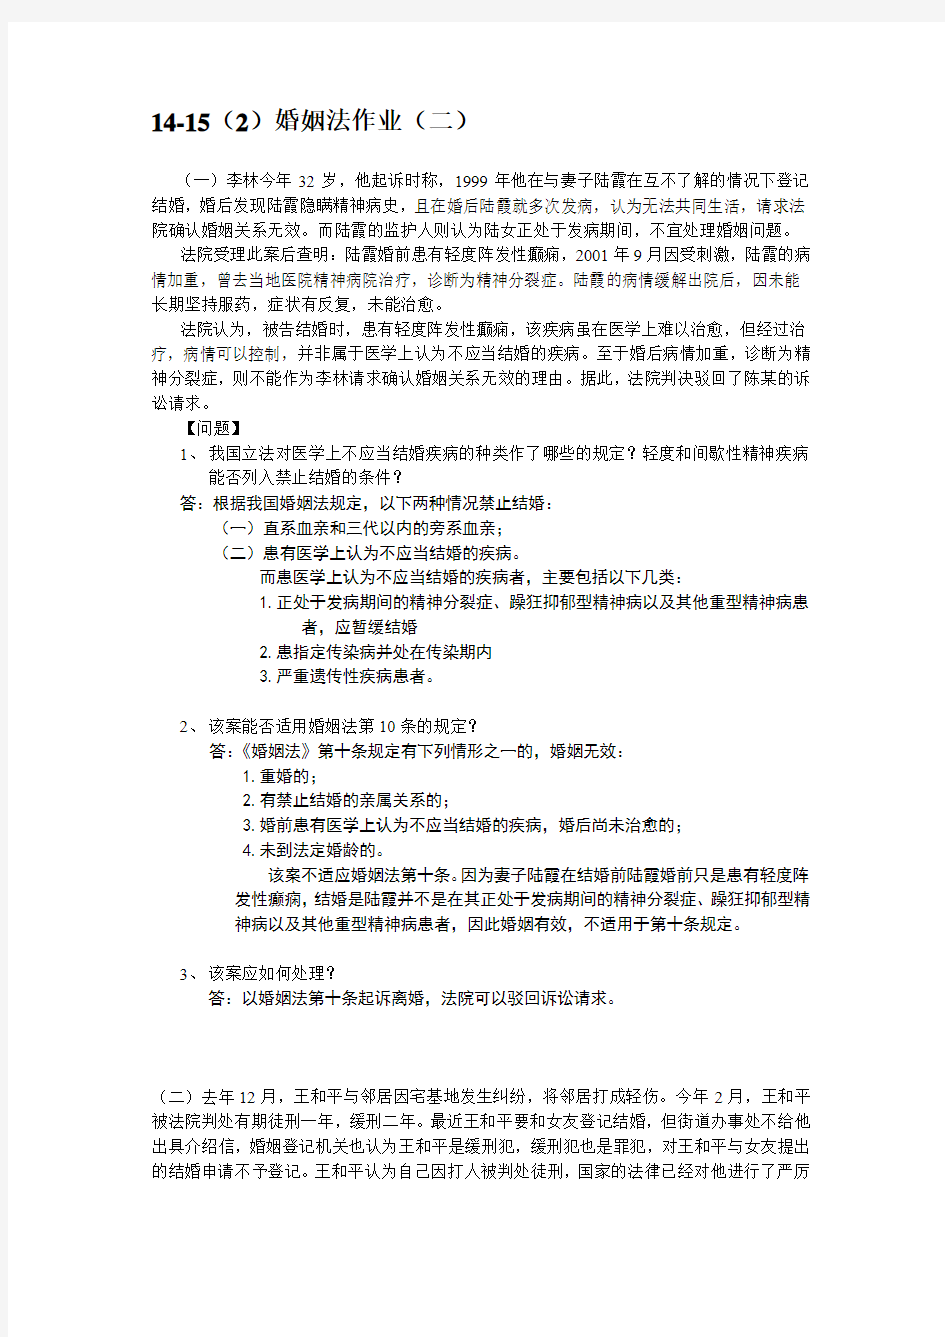 江汉大学婚姻法作业(二)及答案-